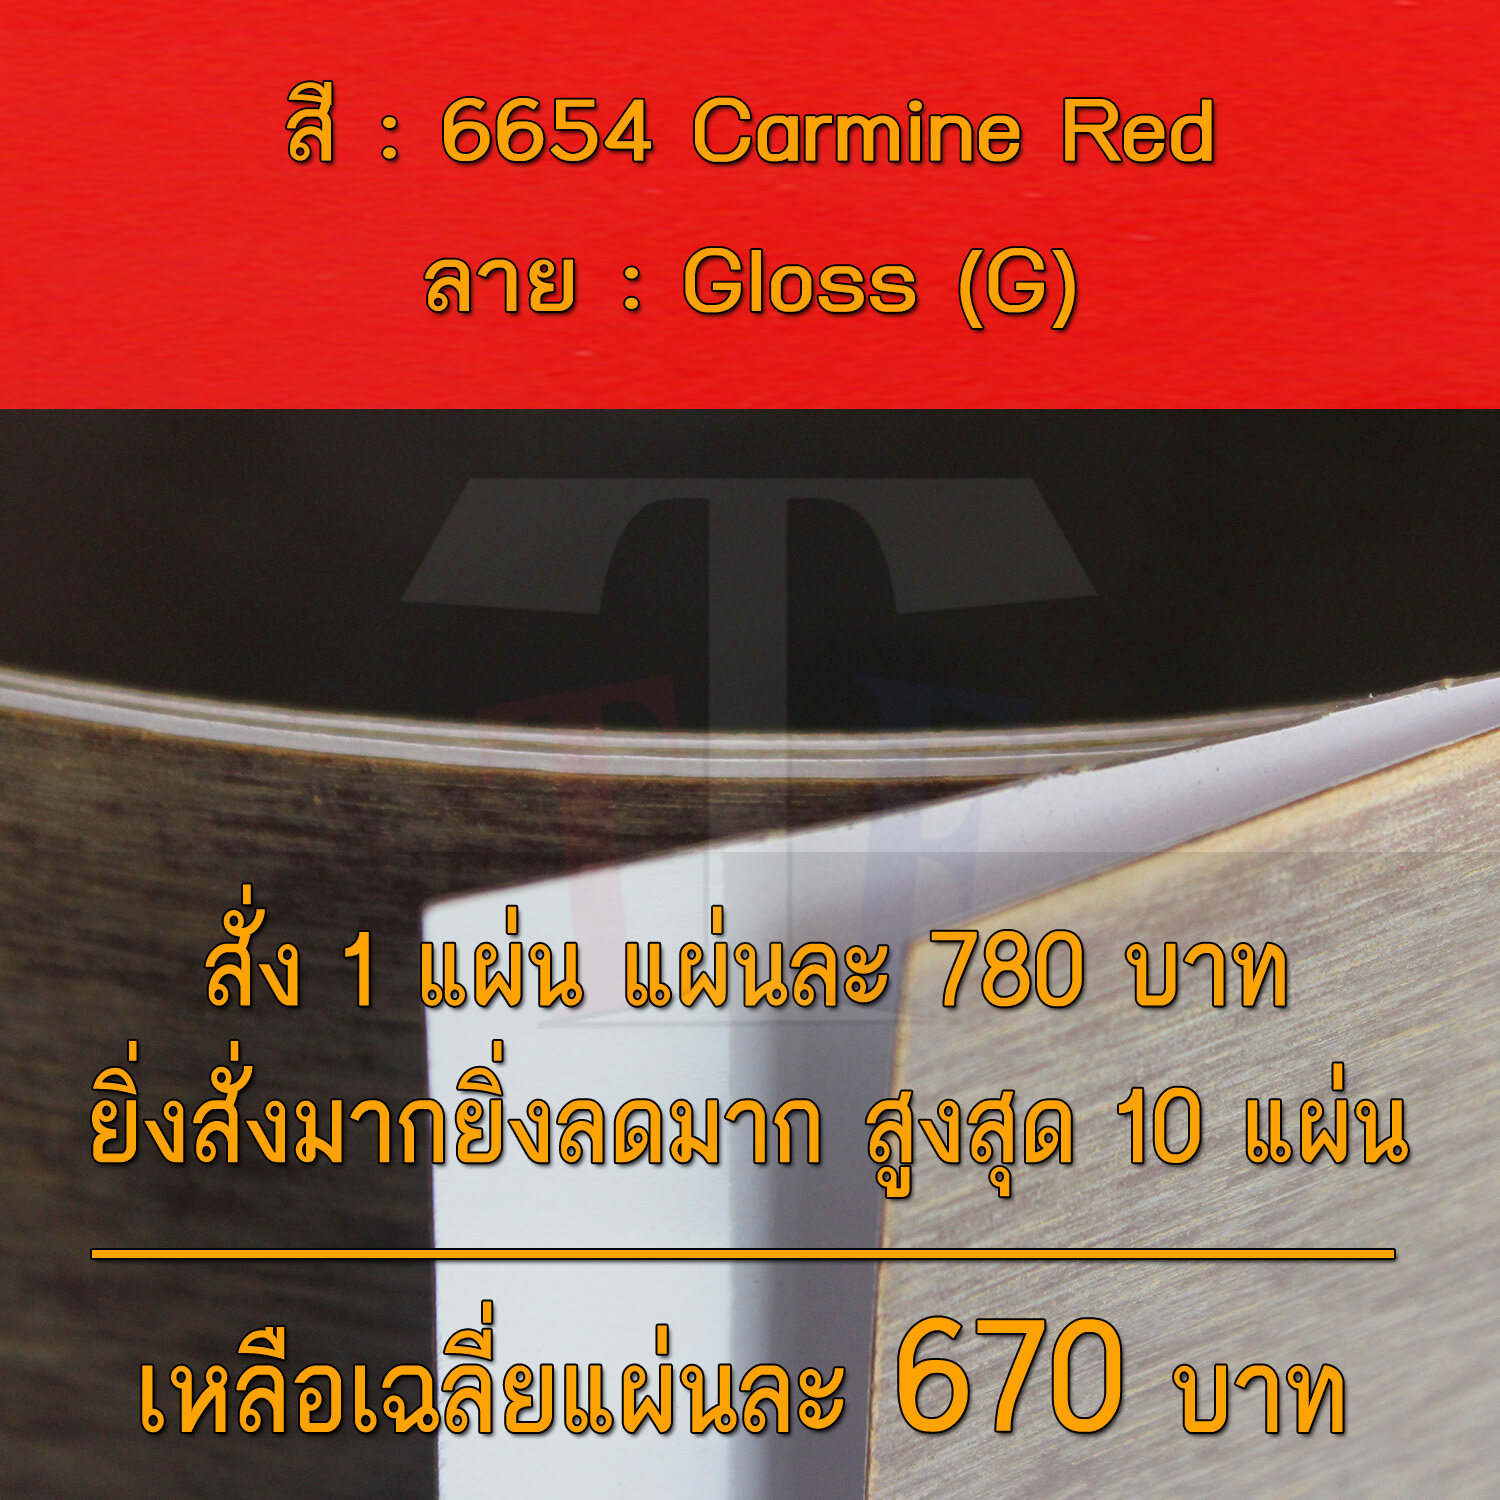 แผ่นโฟเมก้า แผ่นลามิเนต ยี่ห้อ TD Board สีแดง รหัส 6654 Carmine Red พื้นผิวลาย Gloss (G) ขนาด 1220 x 2440 มม. หนา 0.70 มม. ใช้สำหรับงานตกแต่งภายใน งานปิดผิวเฟอร์นิเจอร์ ผนัง และอื่นๆ เพื่อเพิ่มความสวยงาม formica laminate 6654G